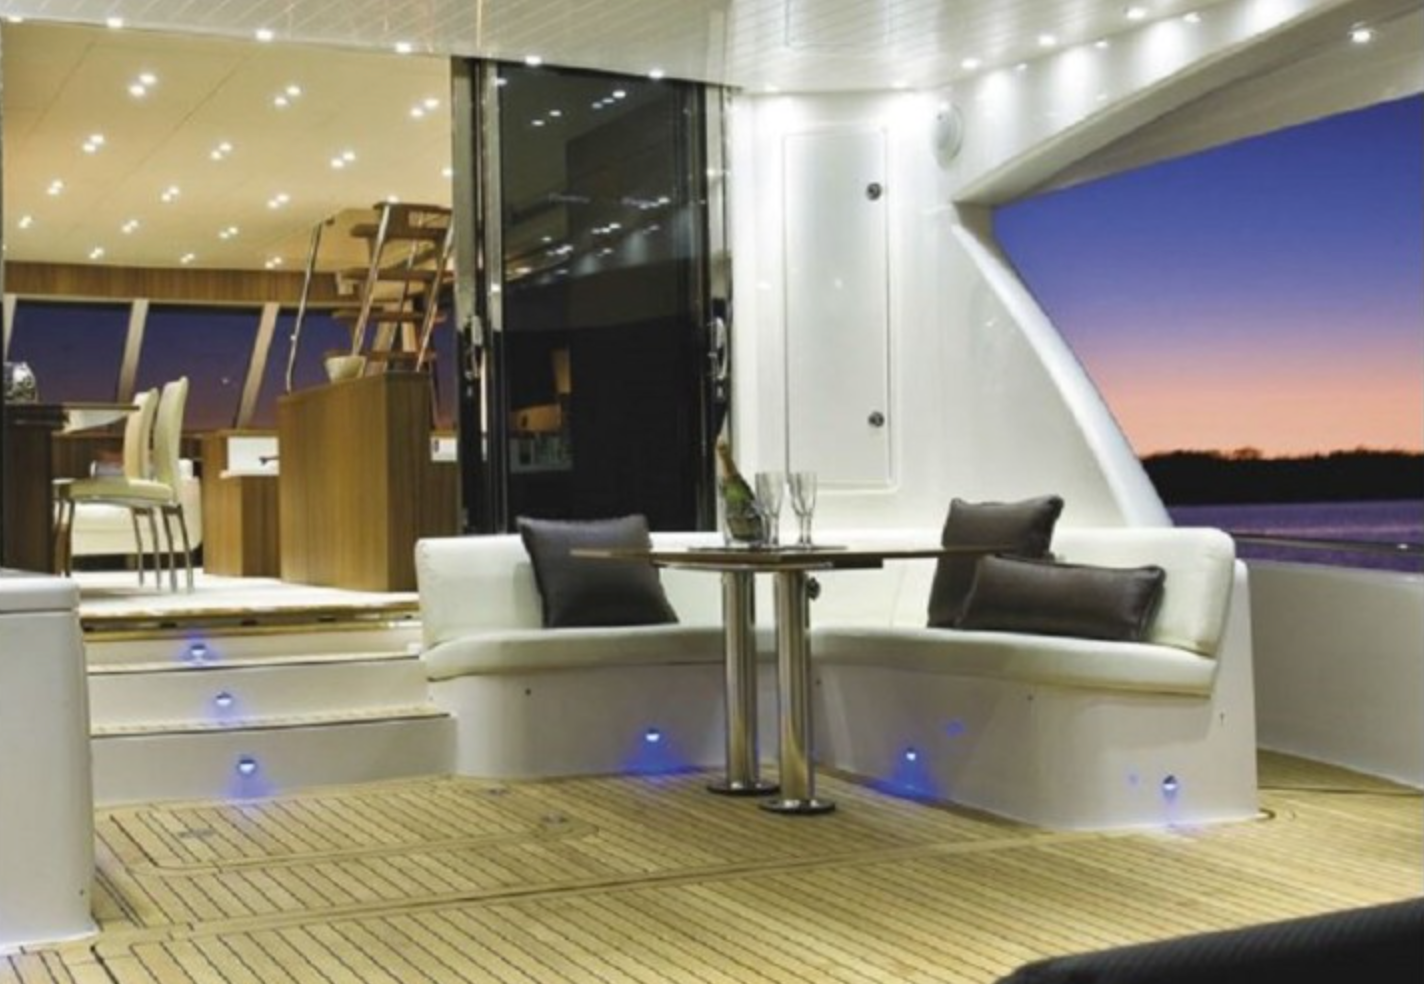 LED boat lights, LED lights on yacht, LED lights